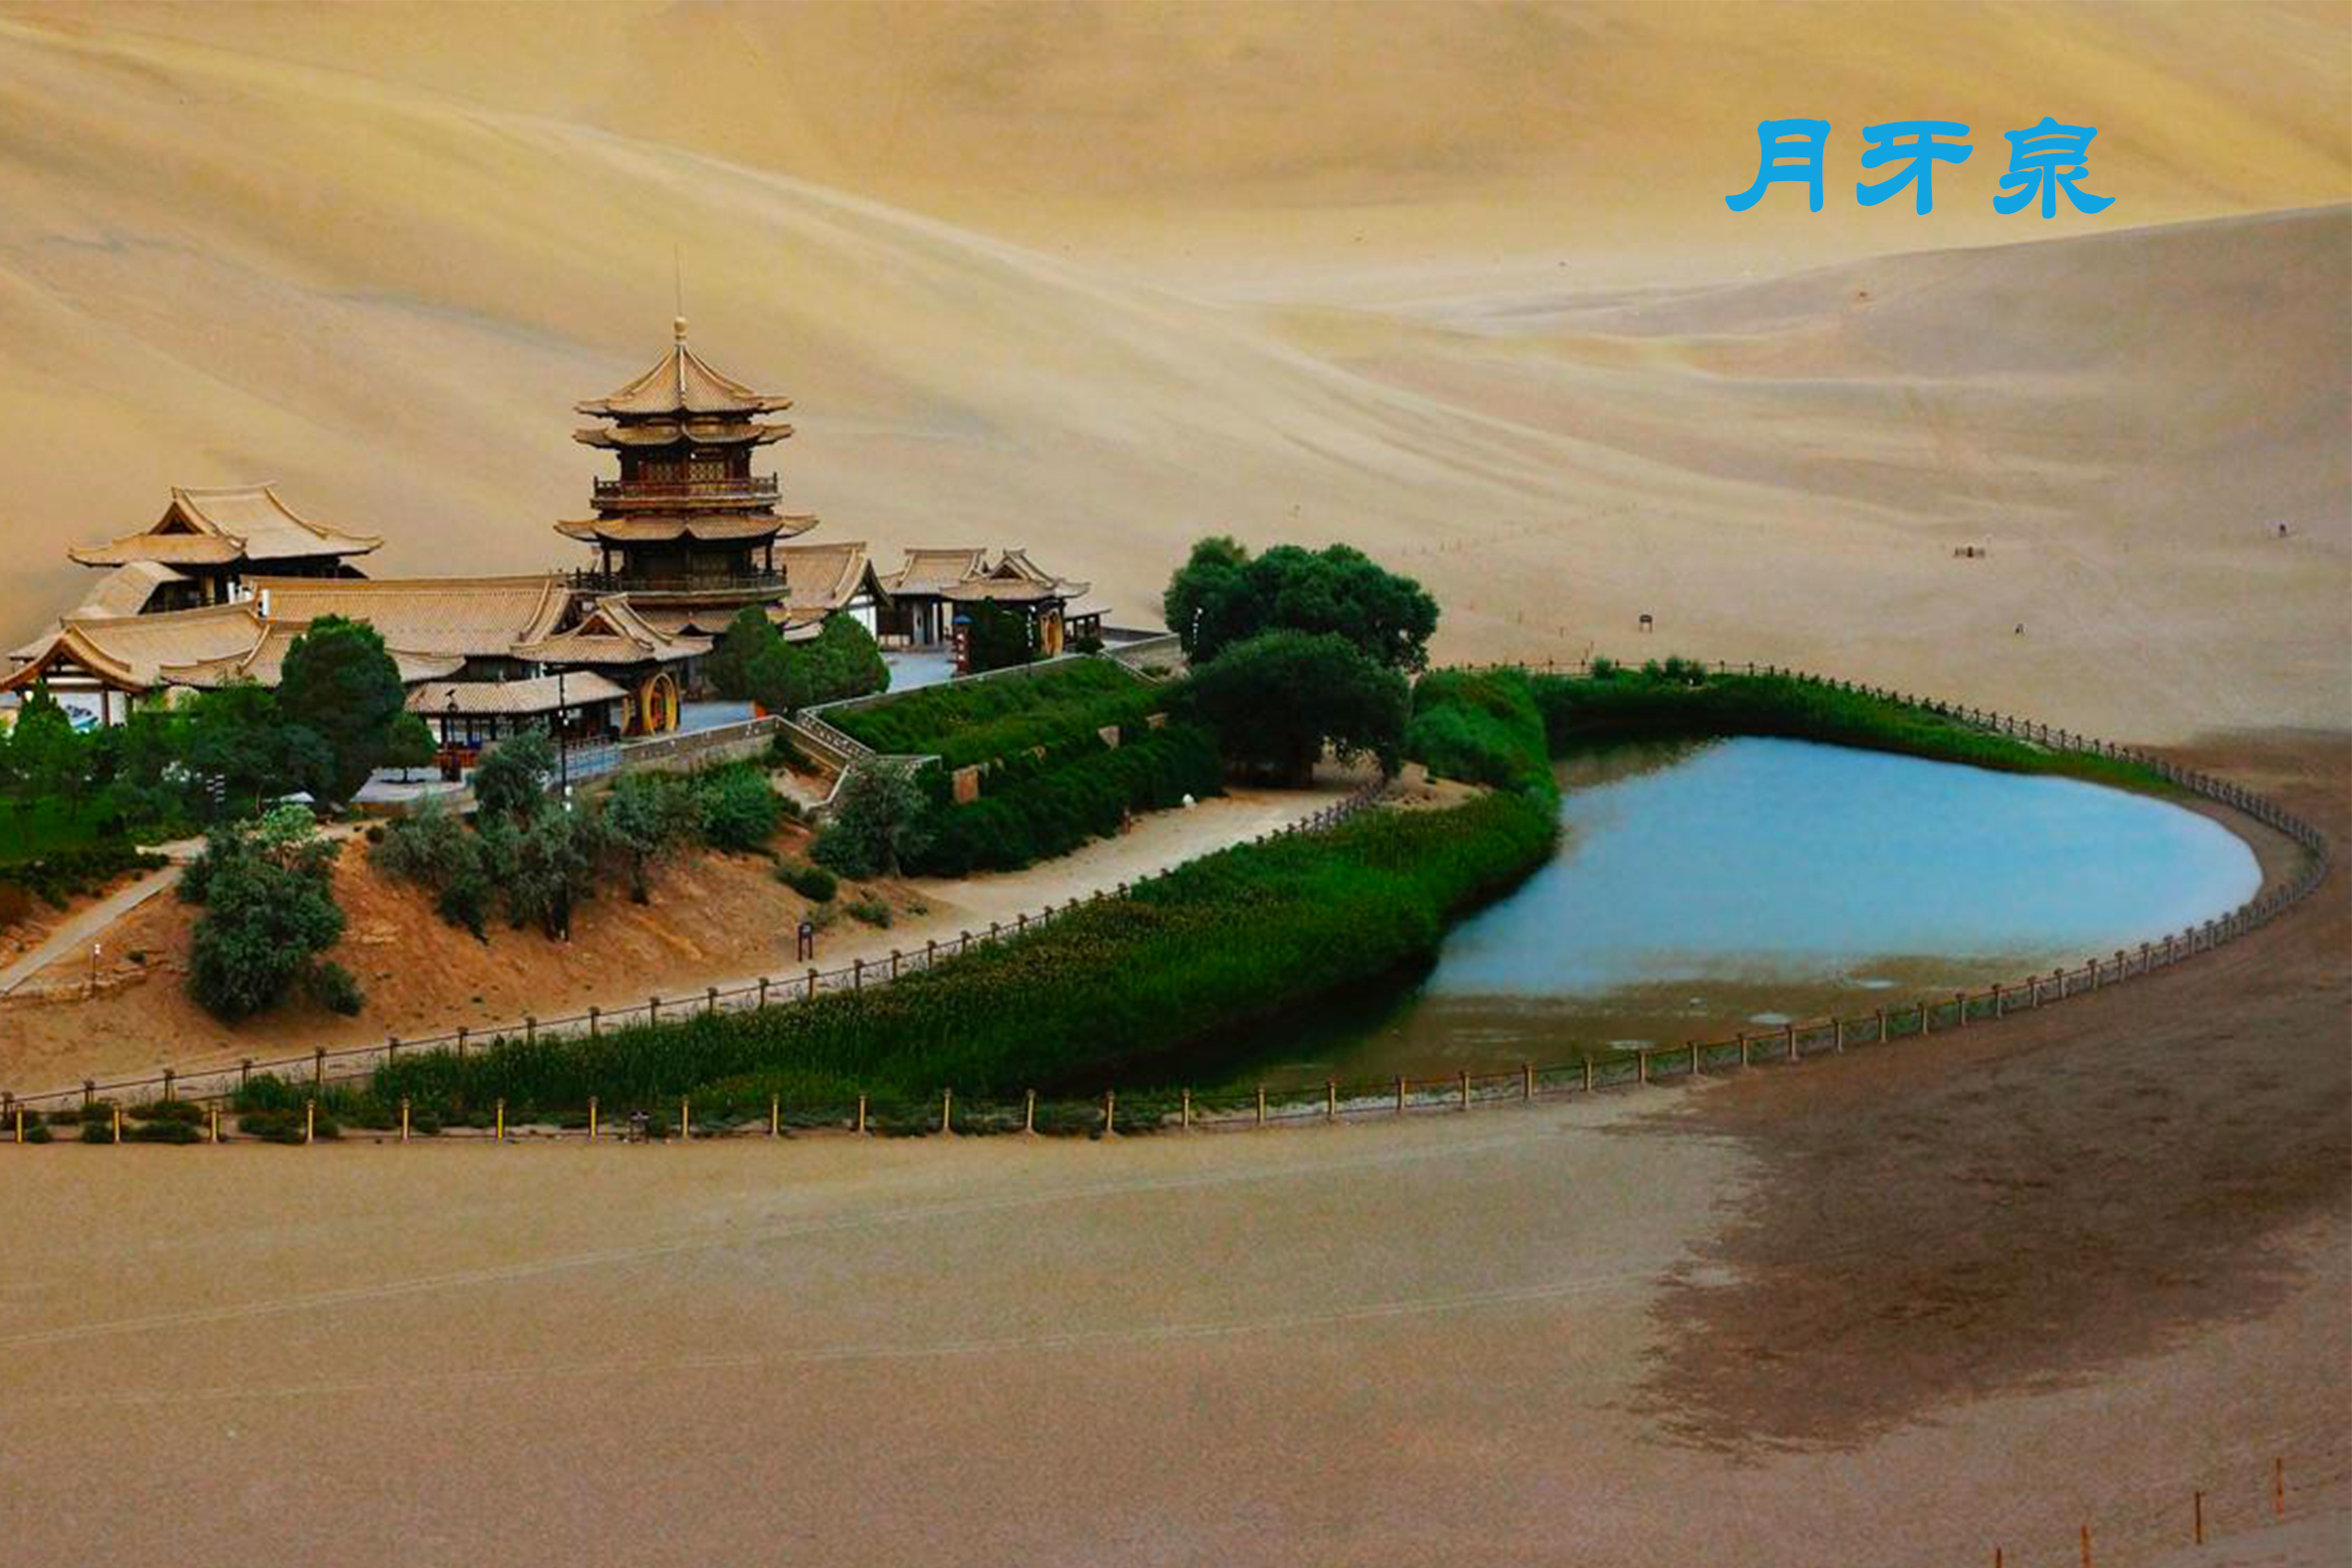 歌曲《月牙湾》中所指的就是位于甘肃省敦煌市的月牙泉,这泉弯曲如新